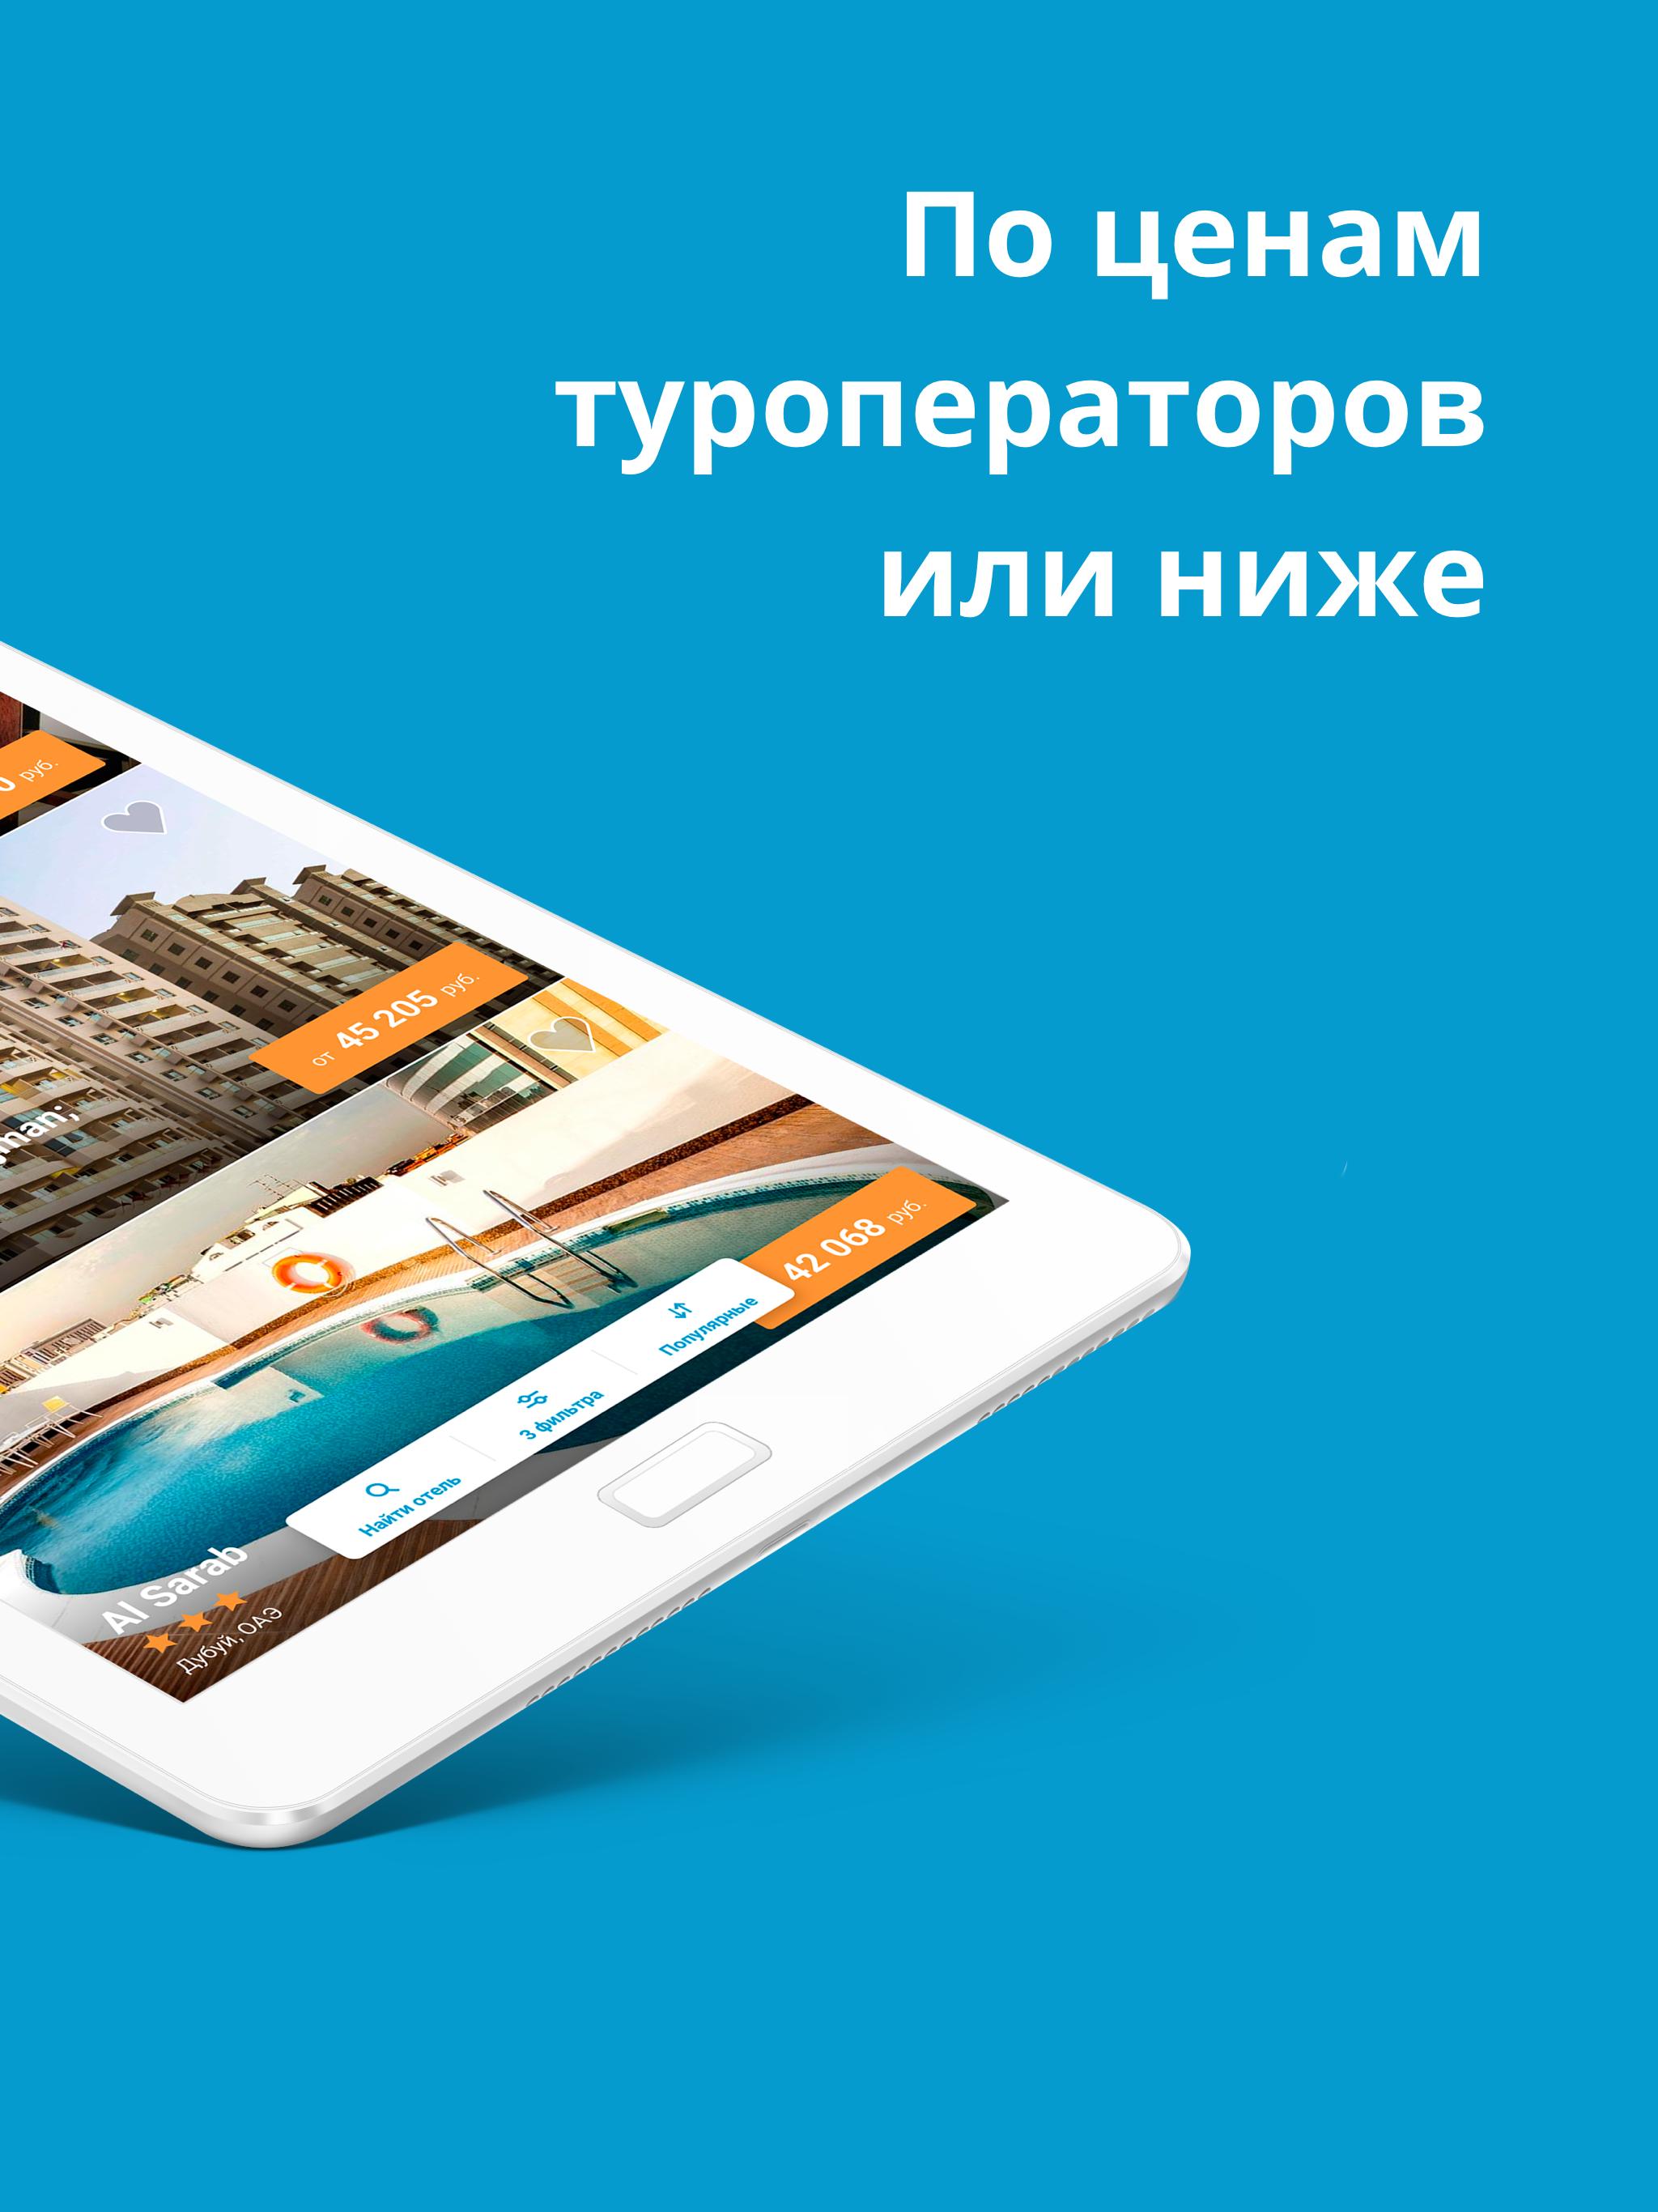 Travelata.ru Все горящие туры и путевки онлайн 3.6.7 Screenshot 12